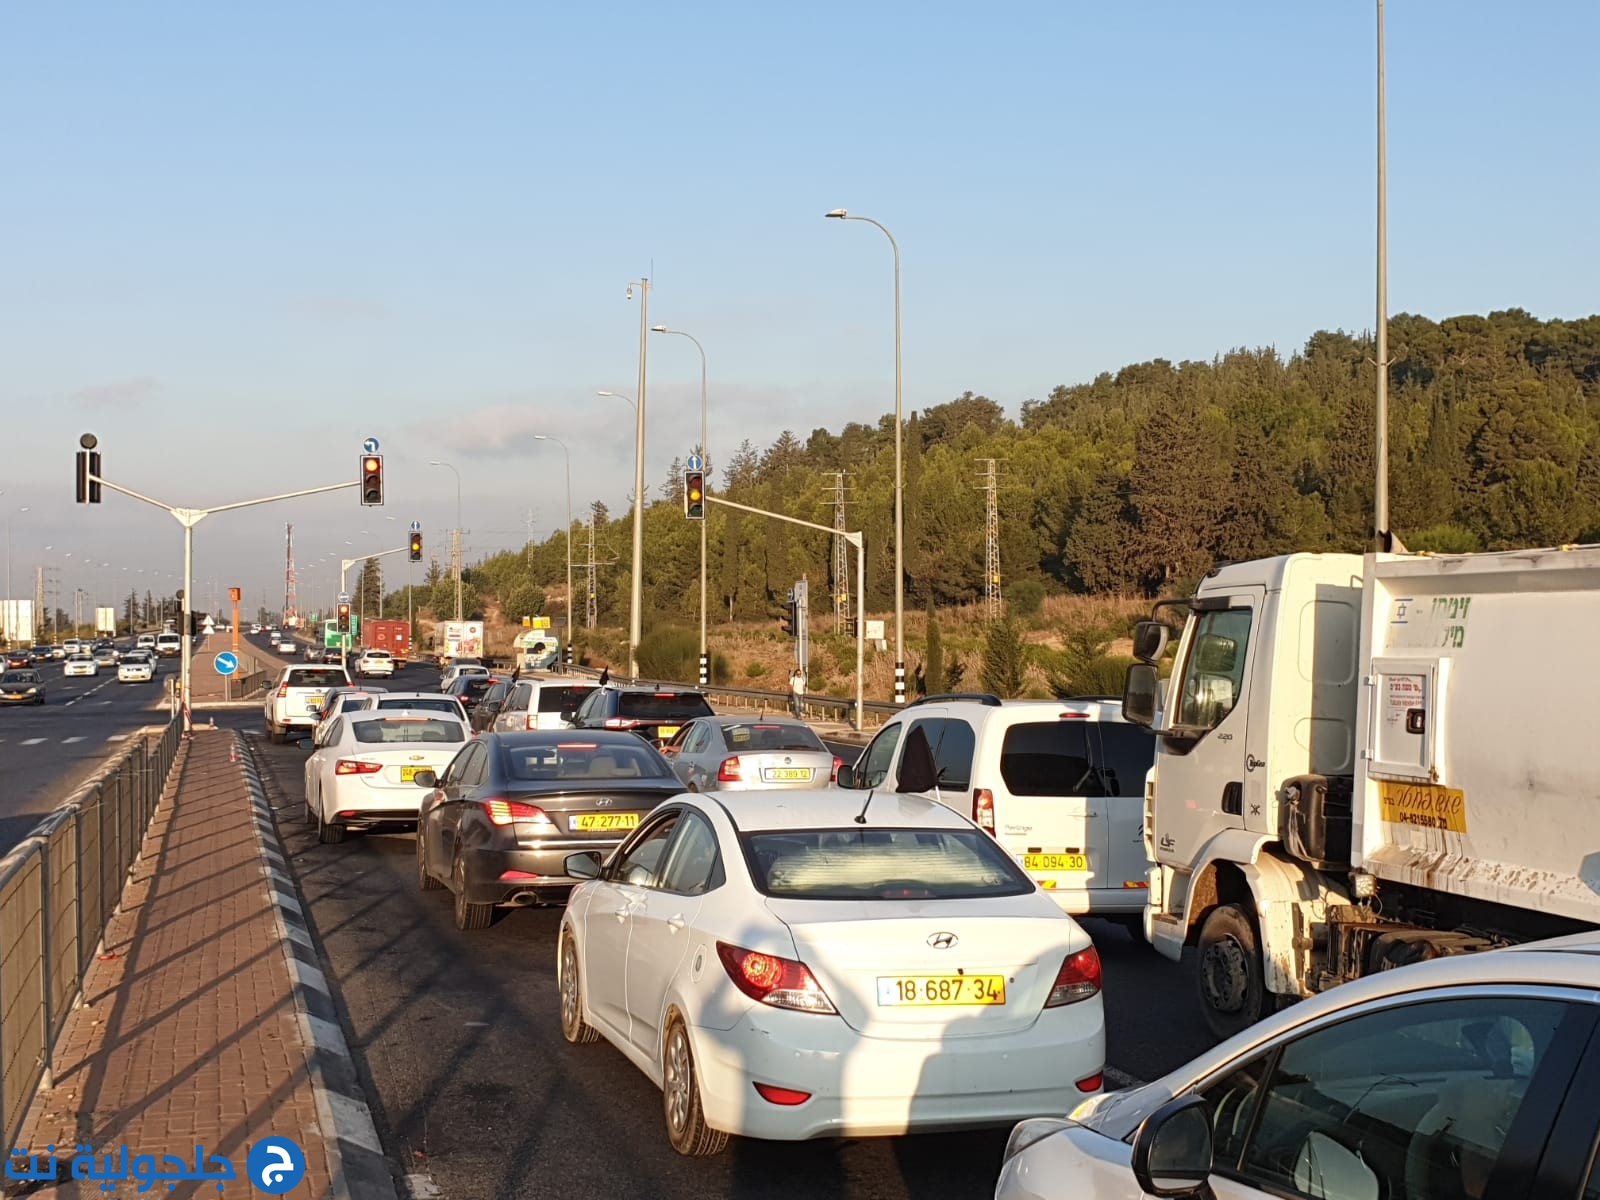 قافلة المركبات الاحتجاجية تواصل سيرها باتجاه القدس